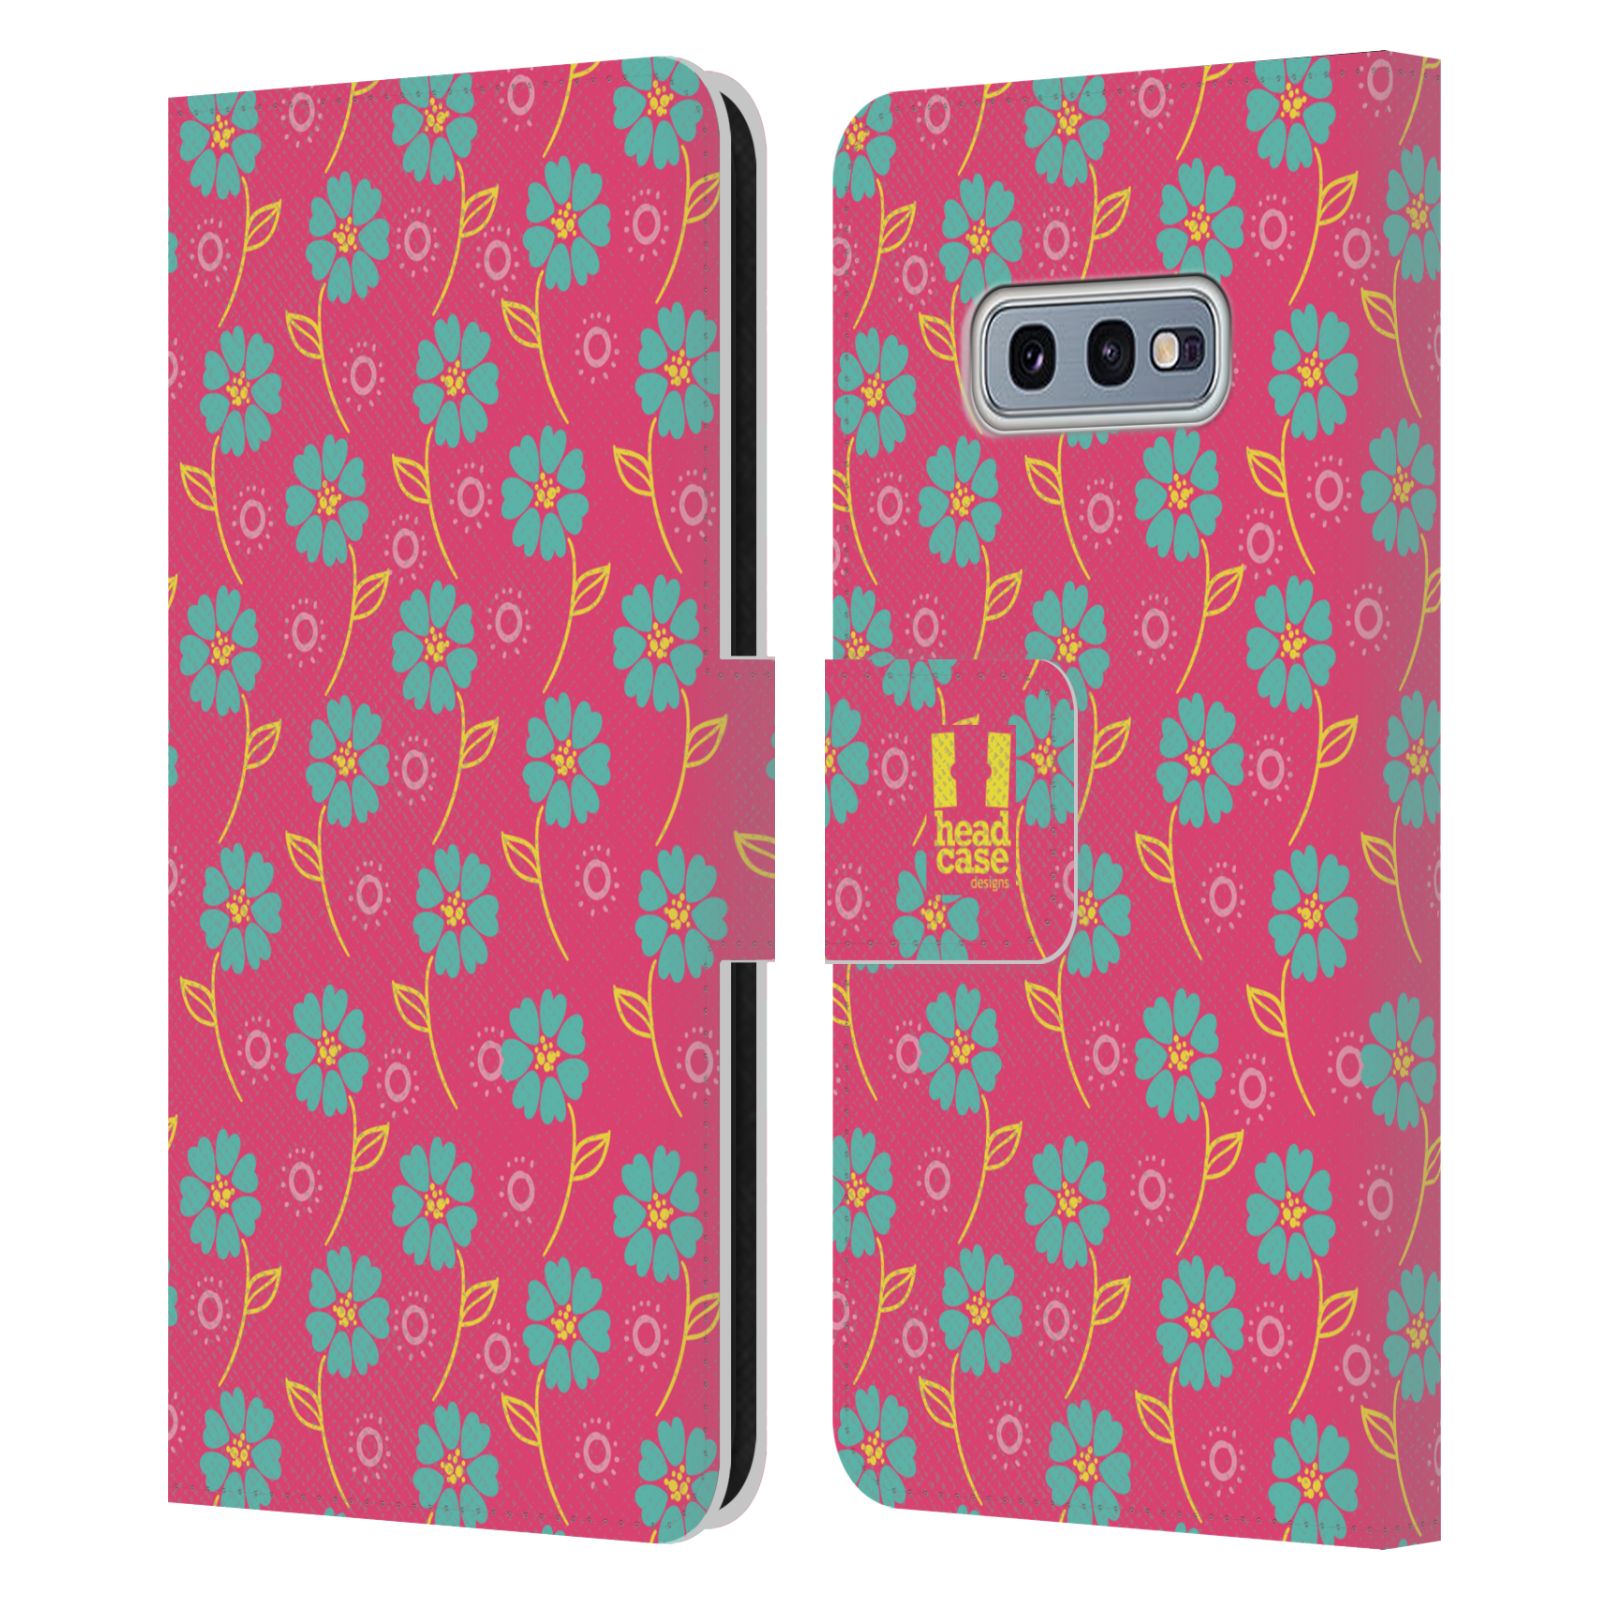 Pouzdro HEAD CASE na mobil Samsung Galaxy S10e Slovanský vzor růžová a modrá květiny